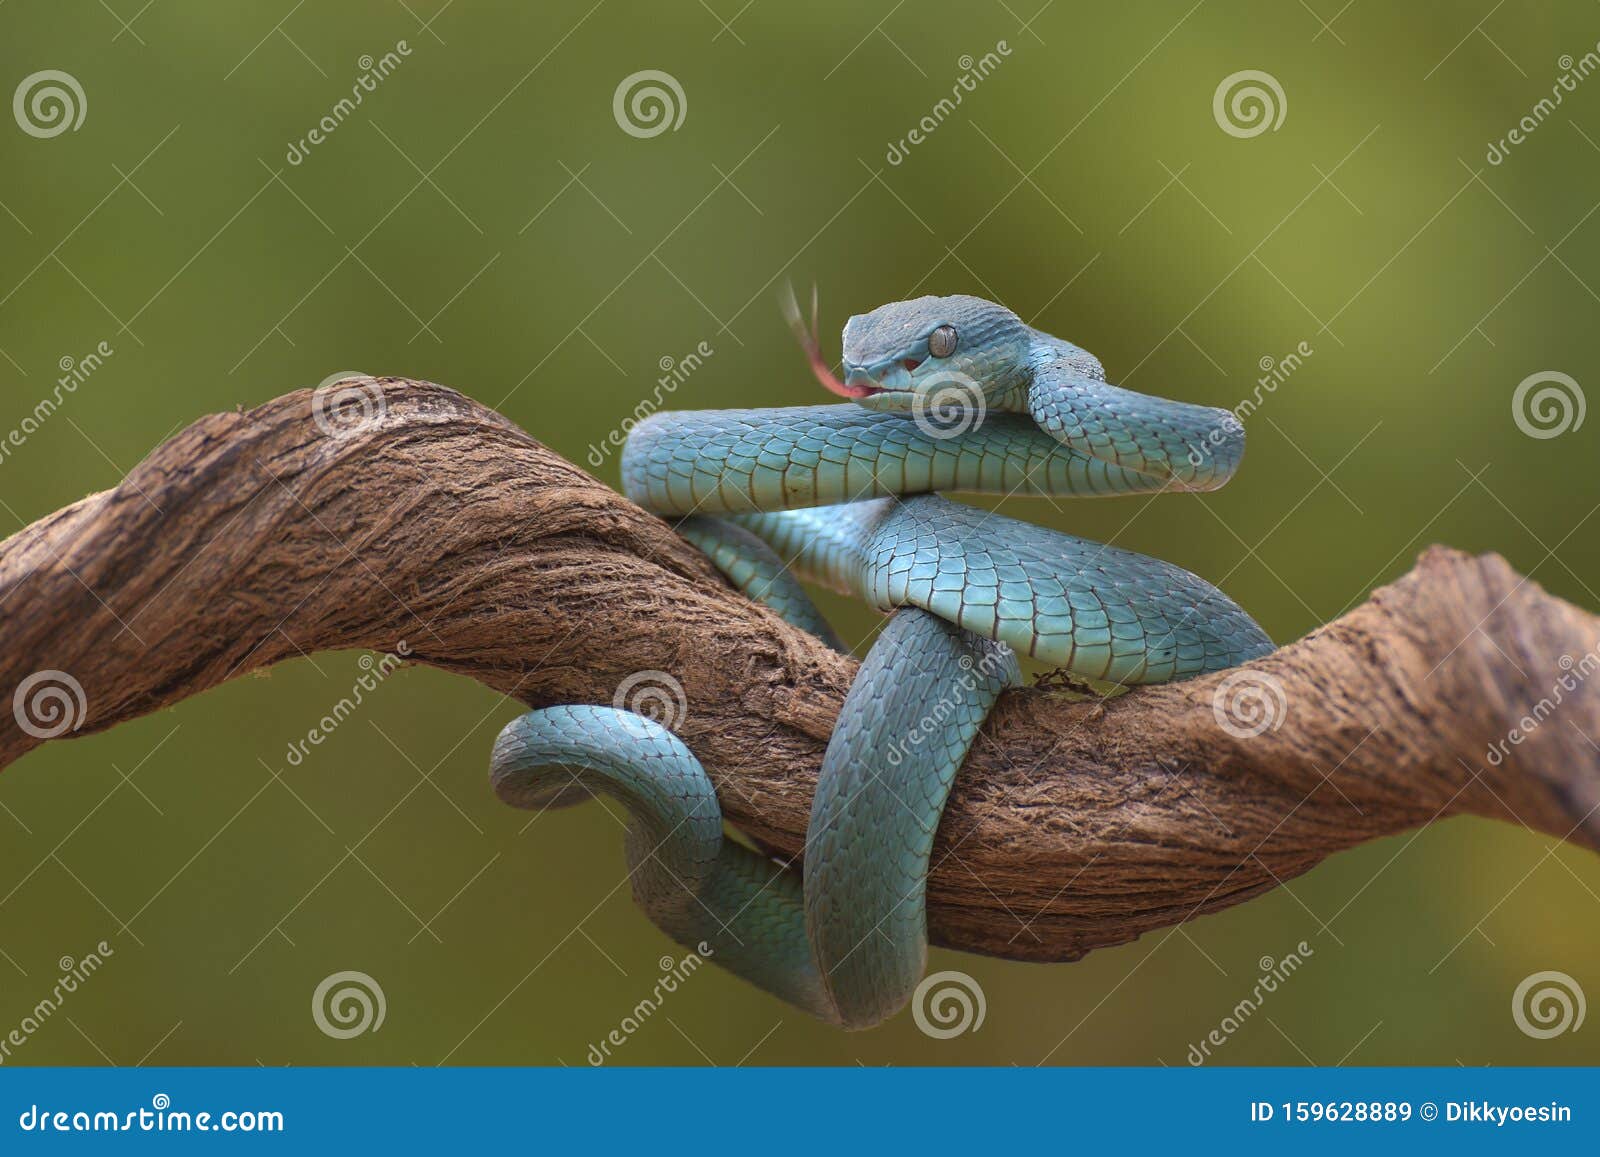 Cobra víbora azul no ramo cobra víbora azul insularis